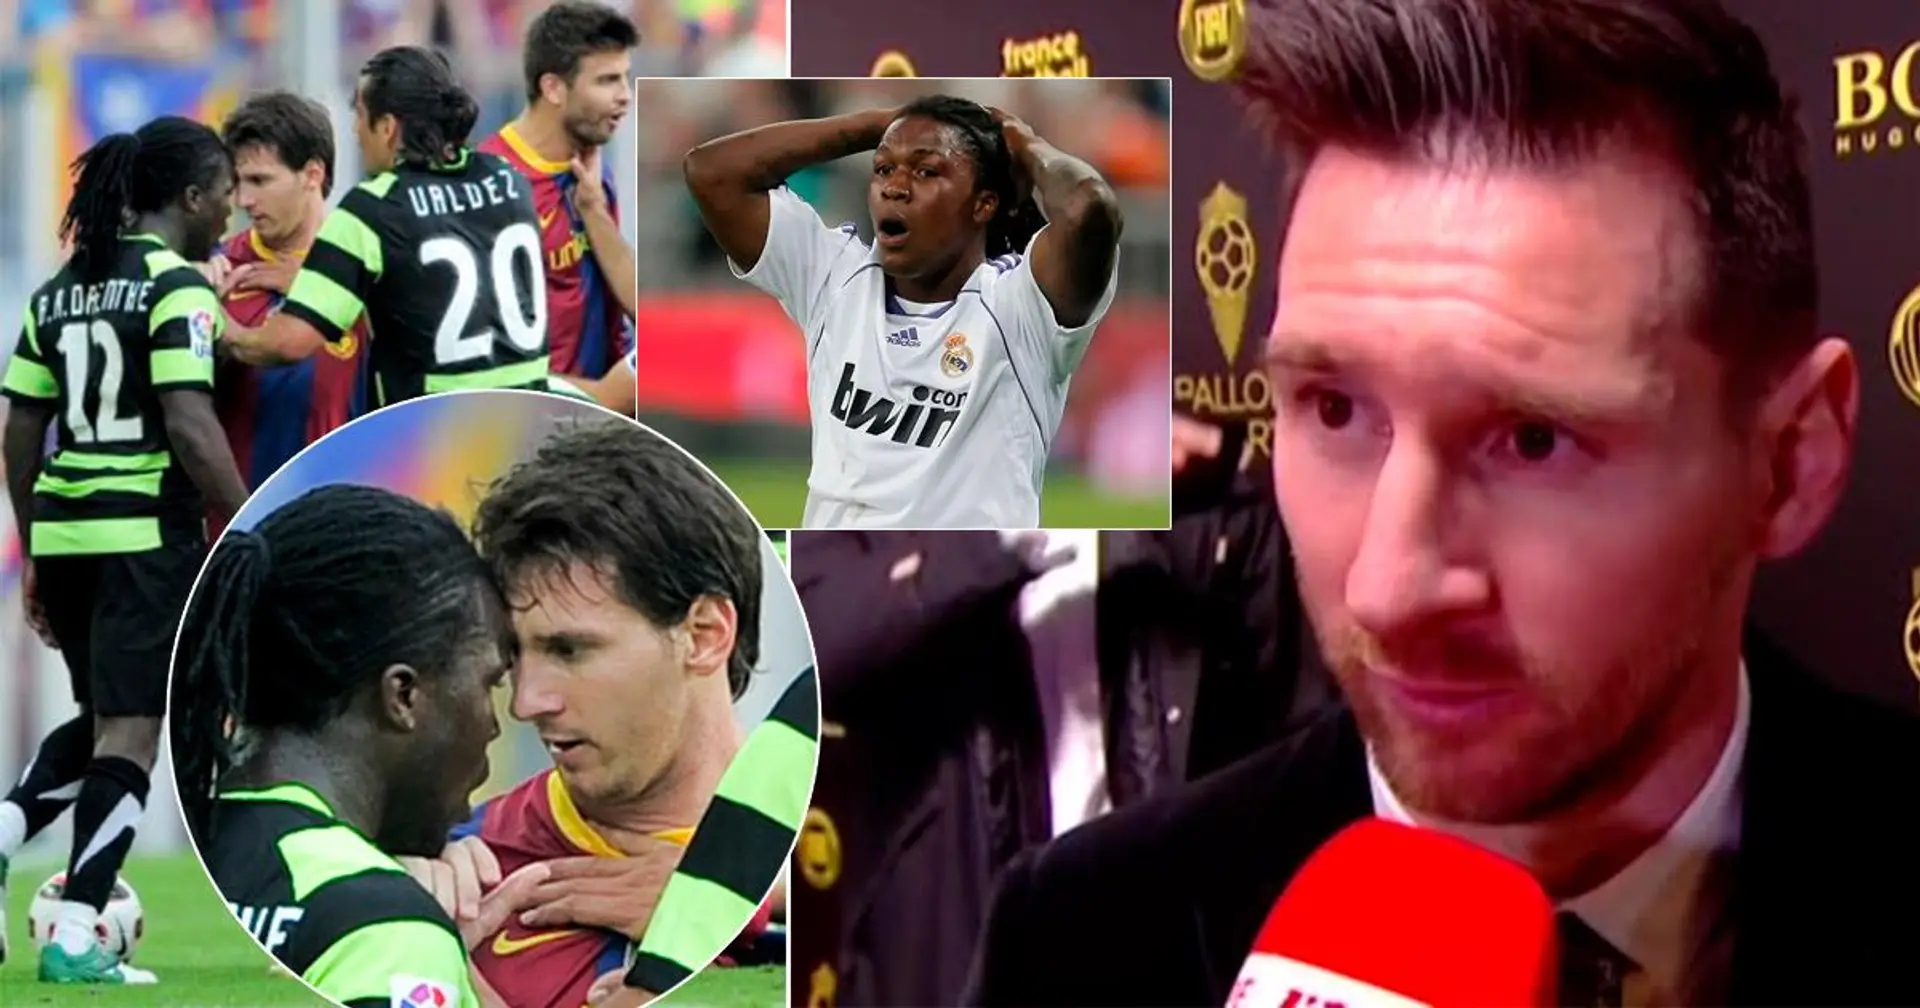 "Nous avons toujours des problèmes les uns avec les autres": pourquoi Drenthe a accusé Leo Messi de racisme